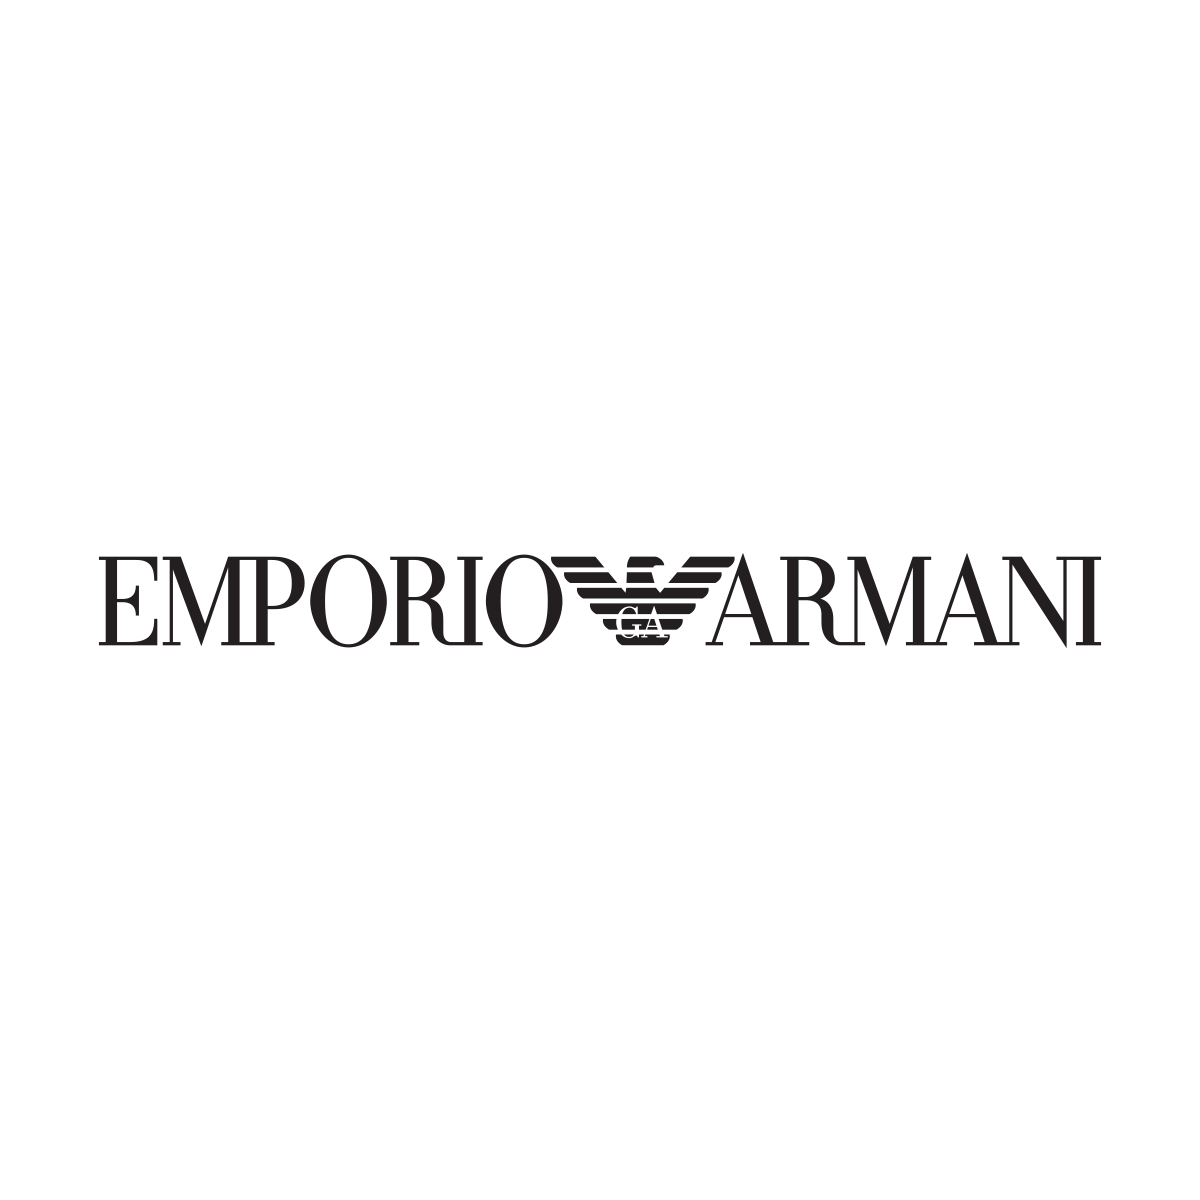 Emporio Armani in Wiesbaden - Logo